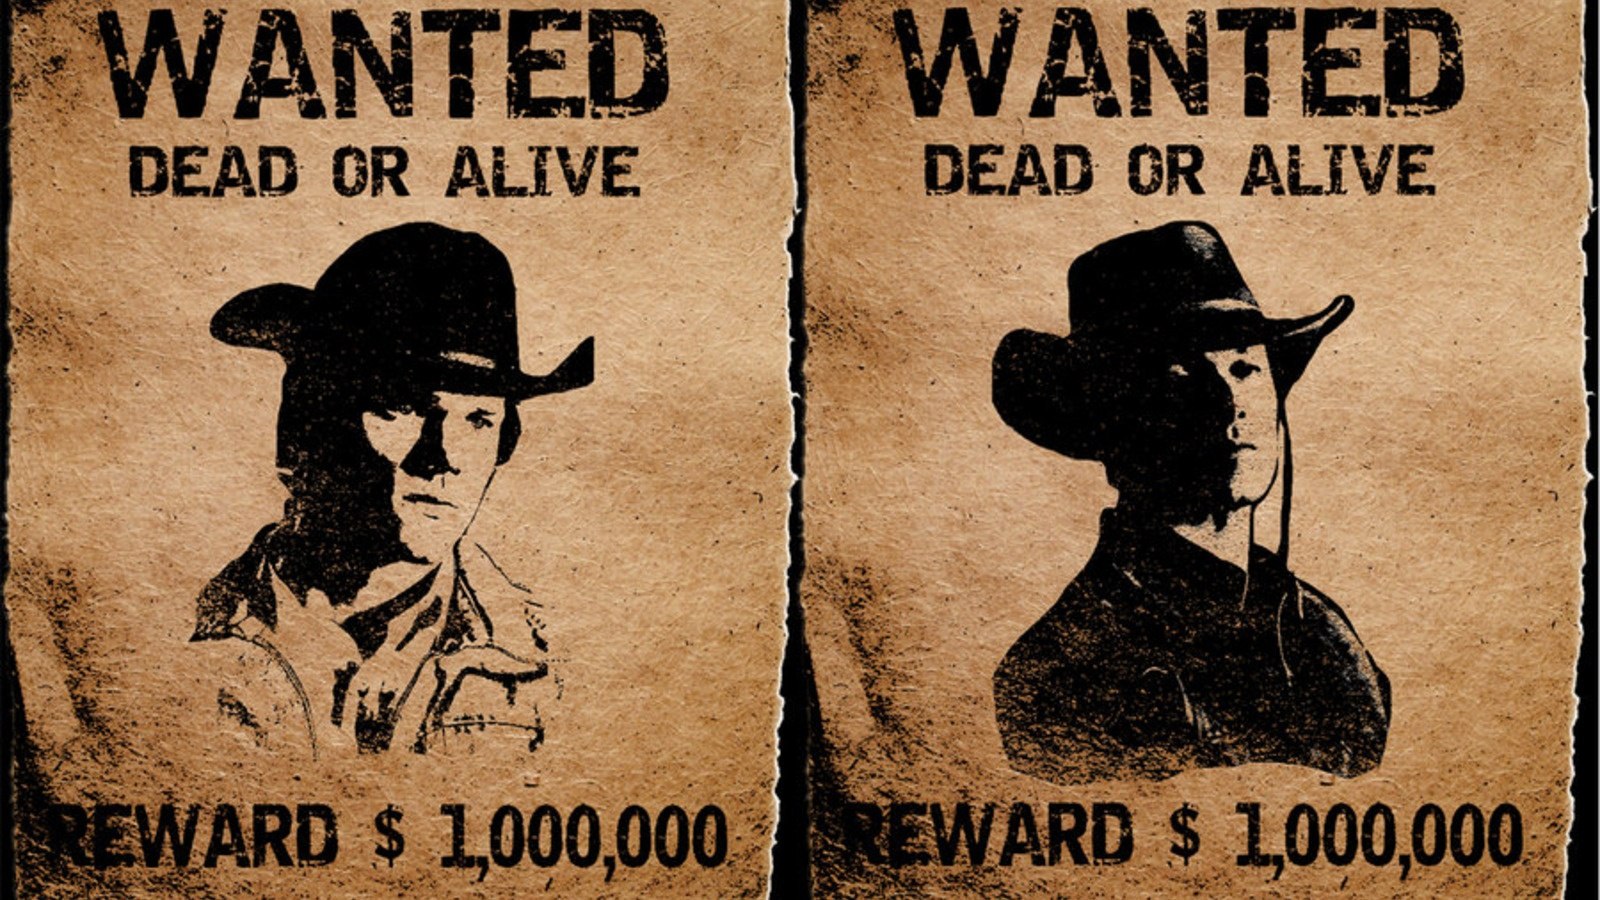 Lived talked wanted. Wanted плакат. Плакат розыска. Плакат разыскивается в стиле вестерн. Плакат в стиле дикого Запада.